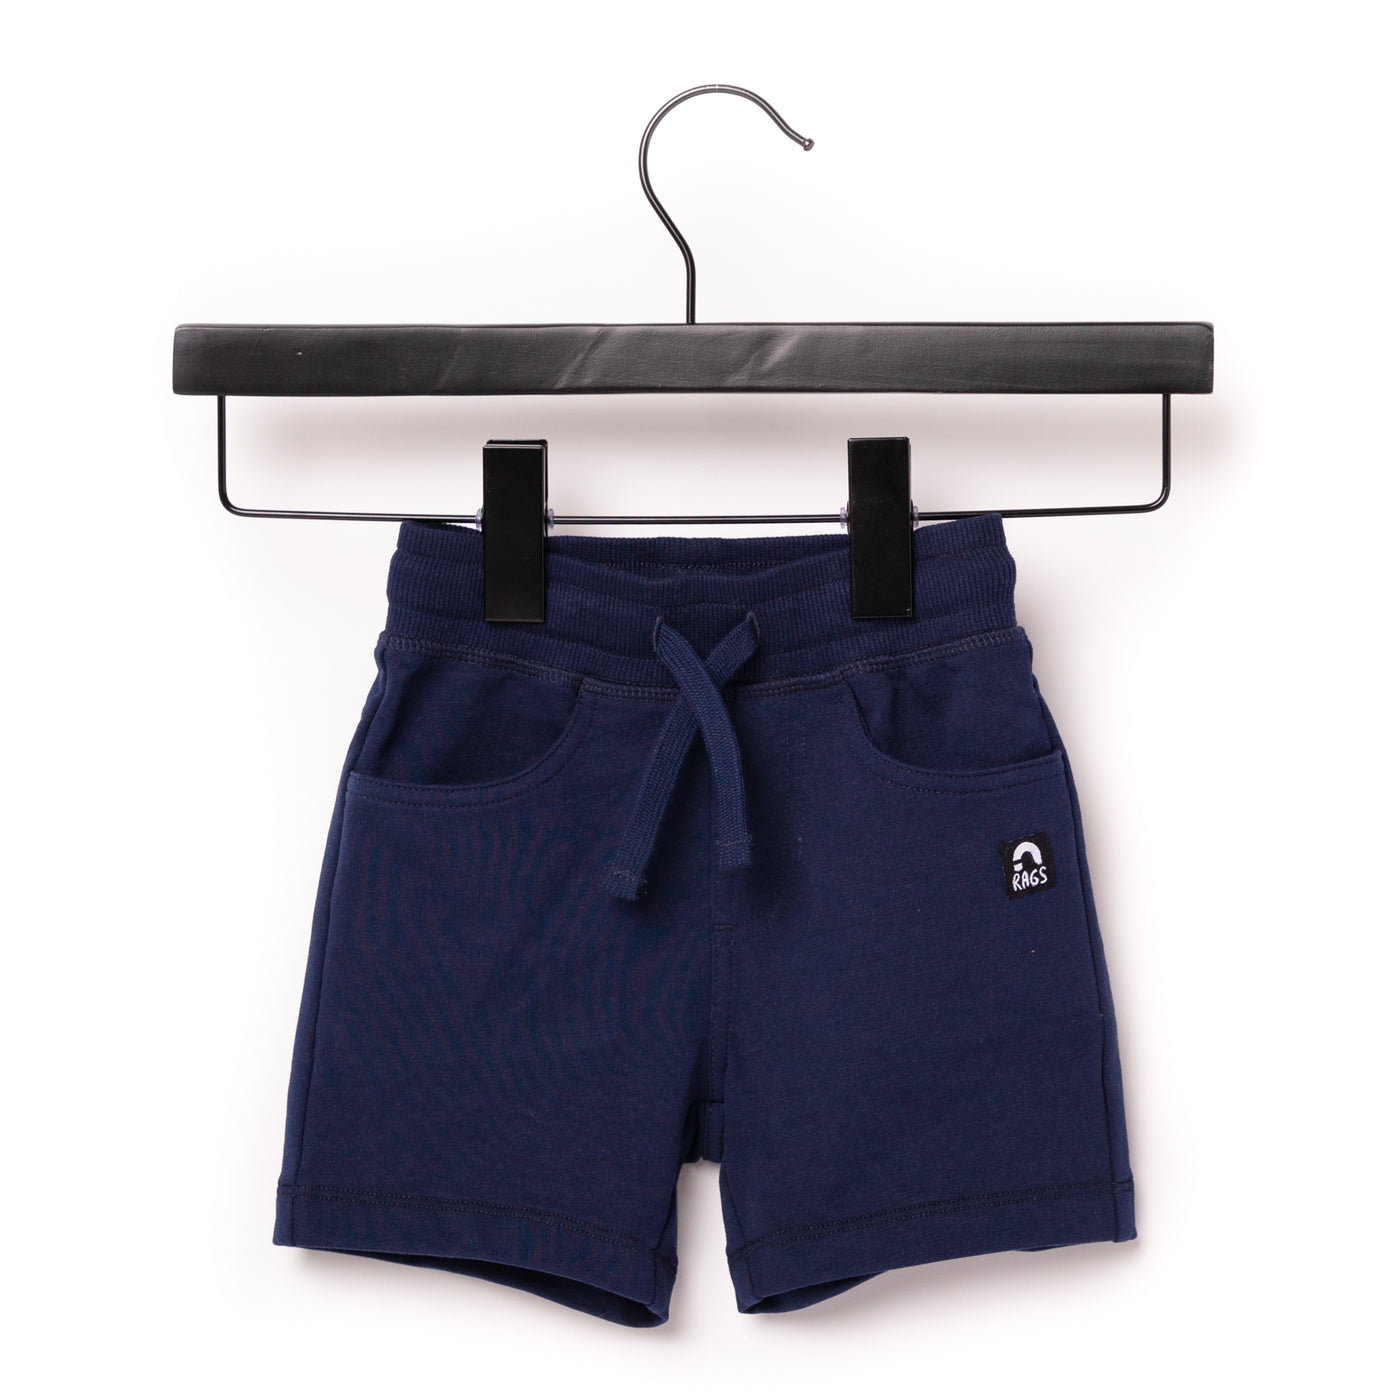 Kids Essentials Shorts - 'Navy'